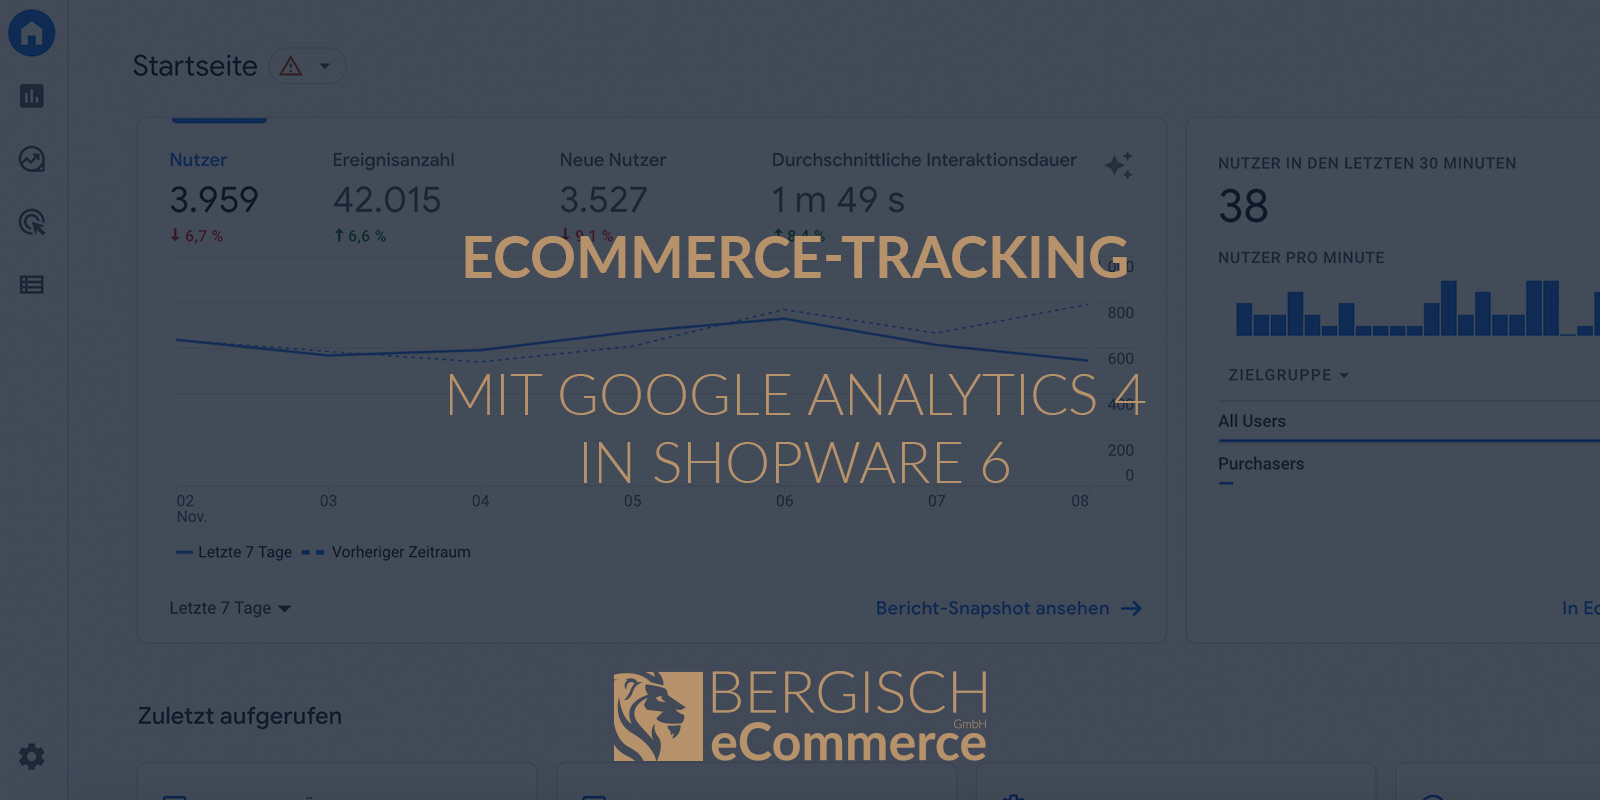 eCommerce-Tracking mit Google Analytics 4 (GA 4) in Shopware 6